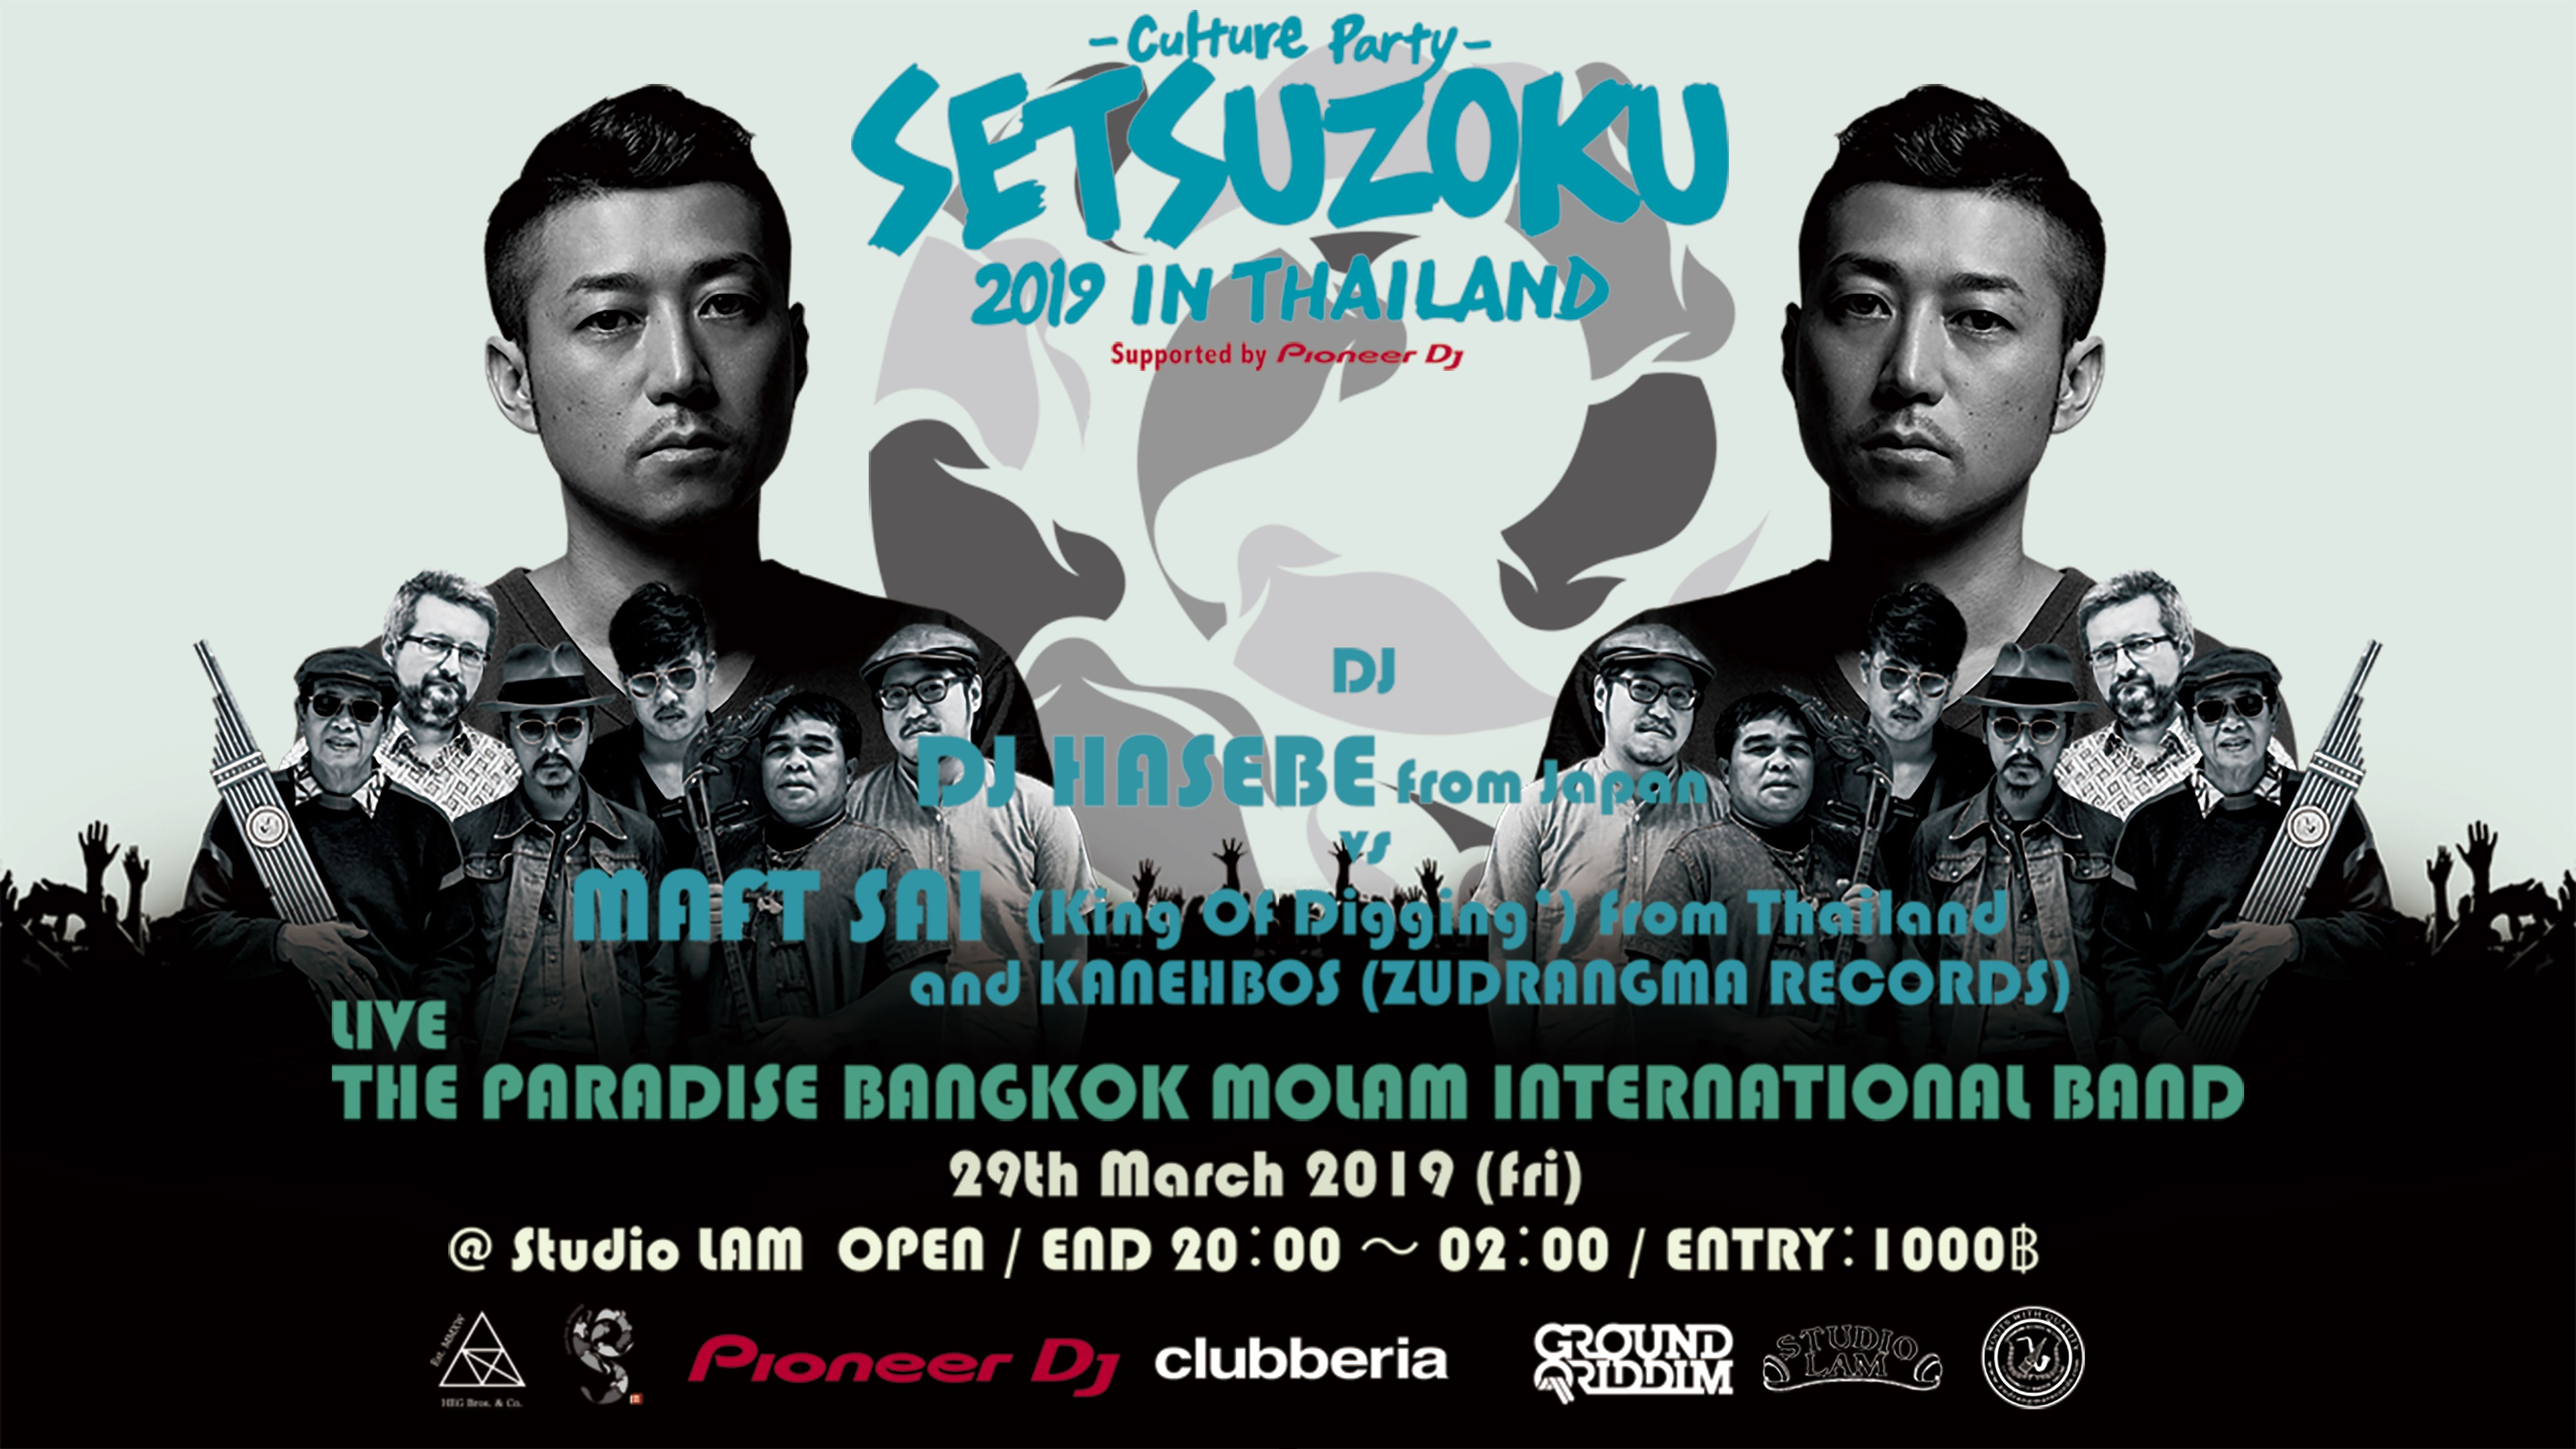 東京発のカルチャーパーティー「SETSUZOKU In Thailand」。次回はDJ HASEBEが出演。沖野修也からのコメントも到着